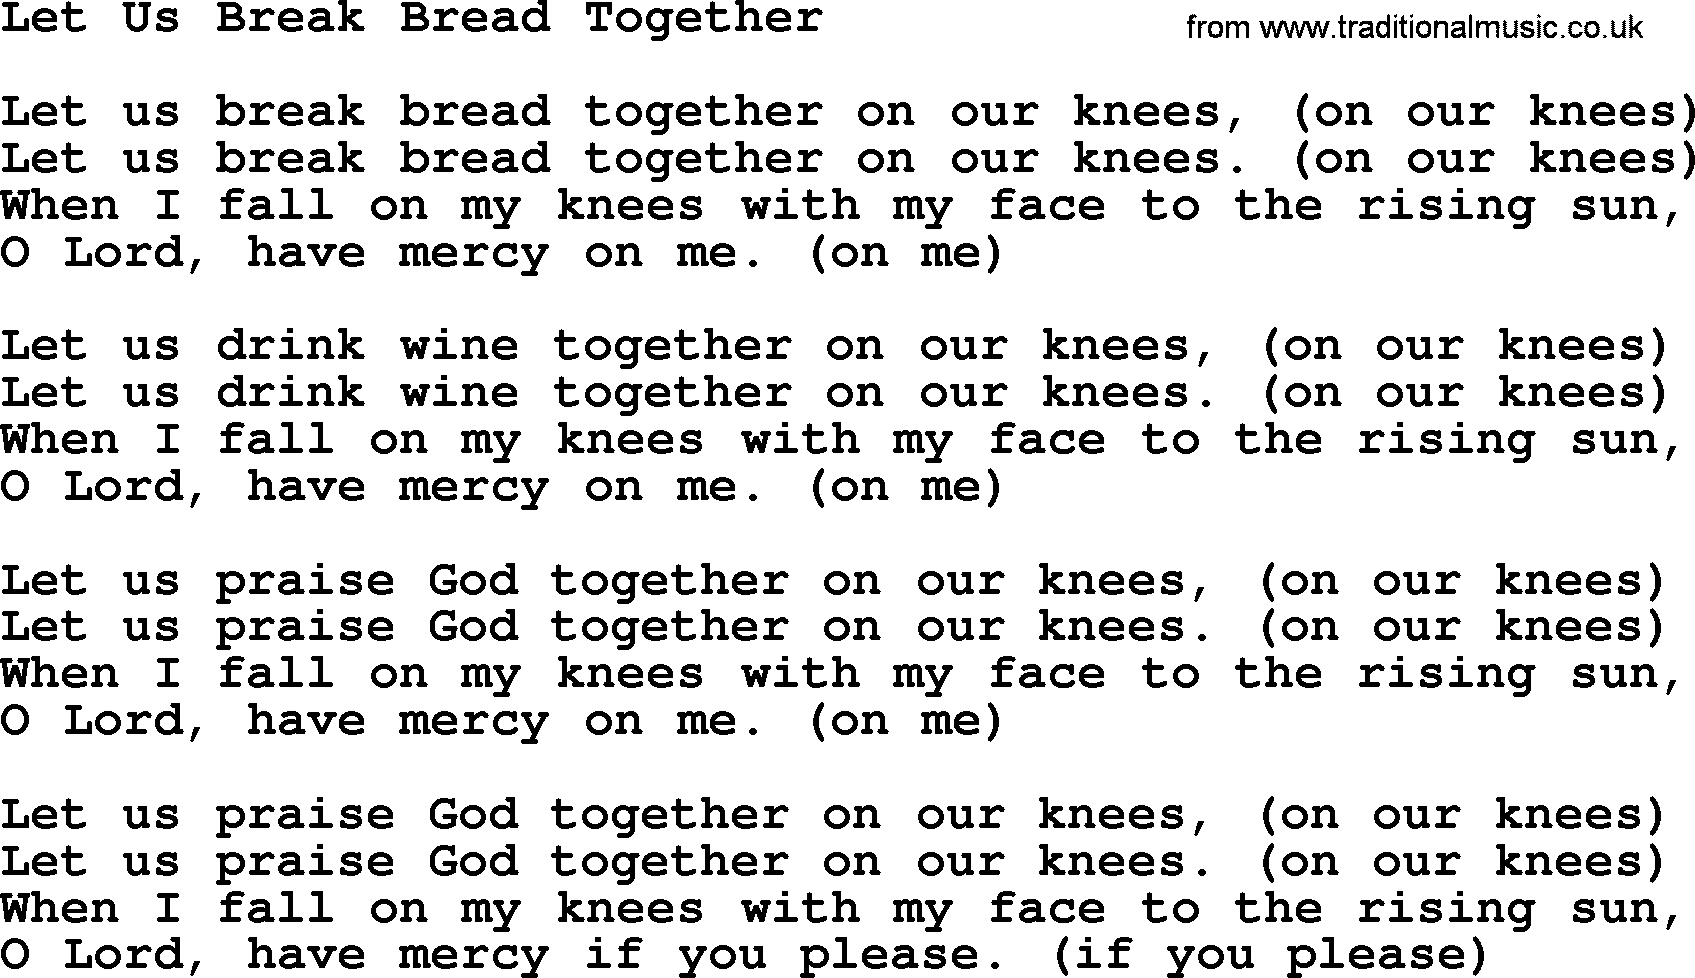 Joan Baez song Let Us Break Bread Together, lyrics